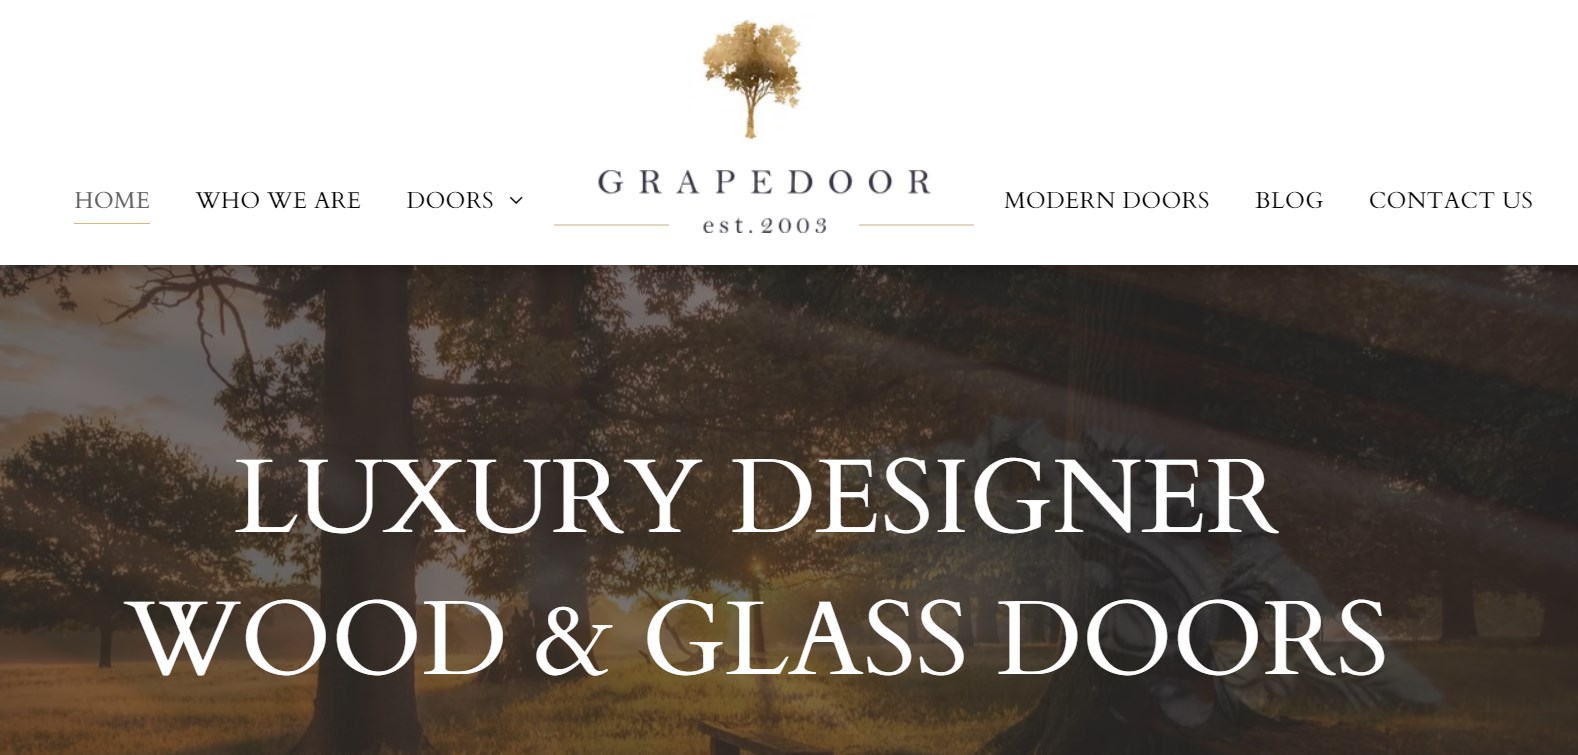 GRAPEDOOR luxury wood door manufacturer